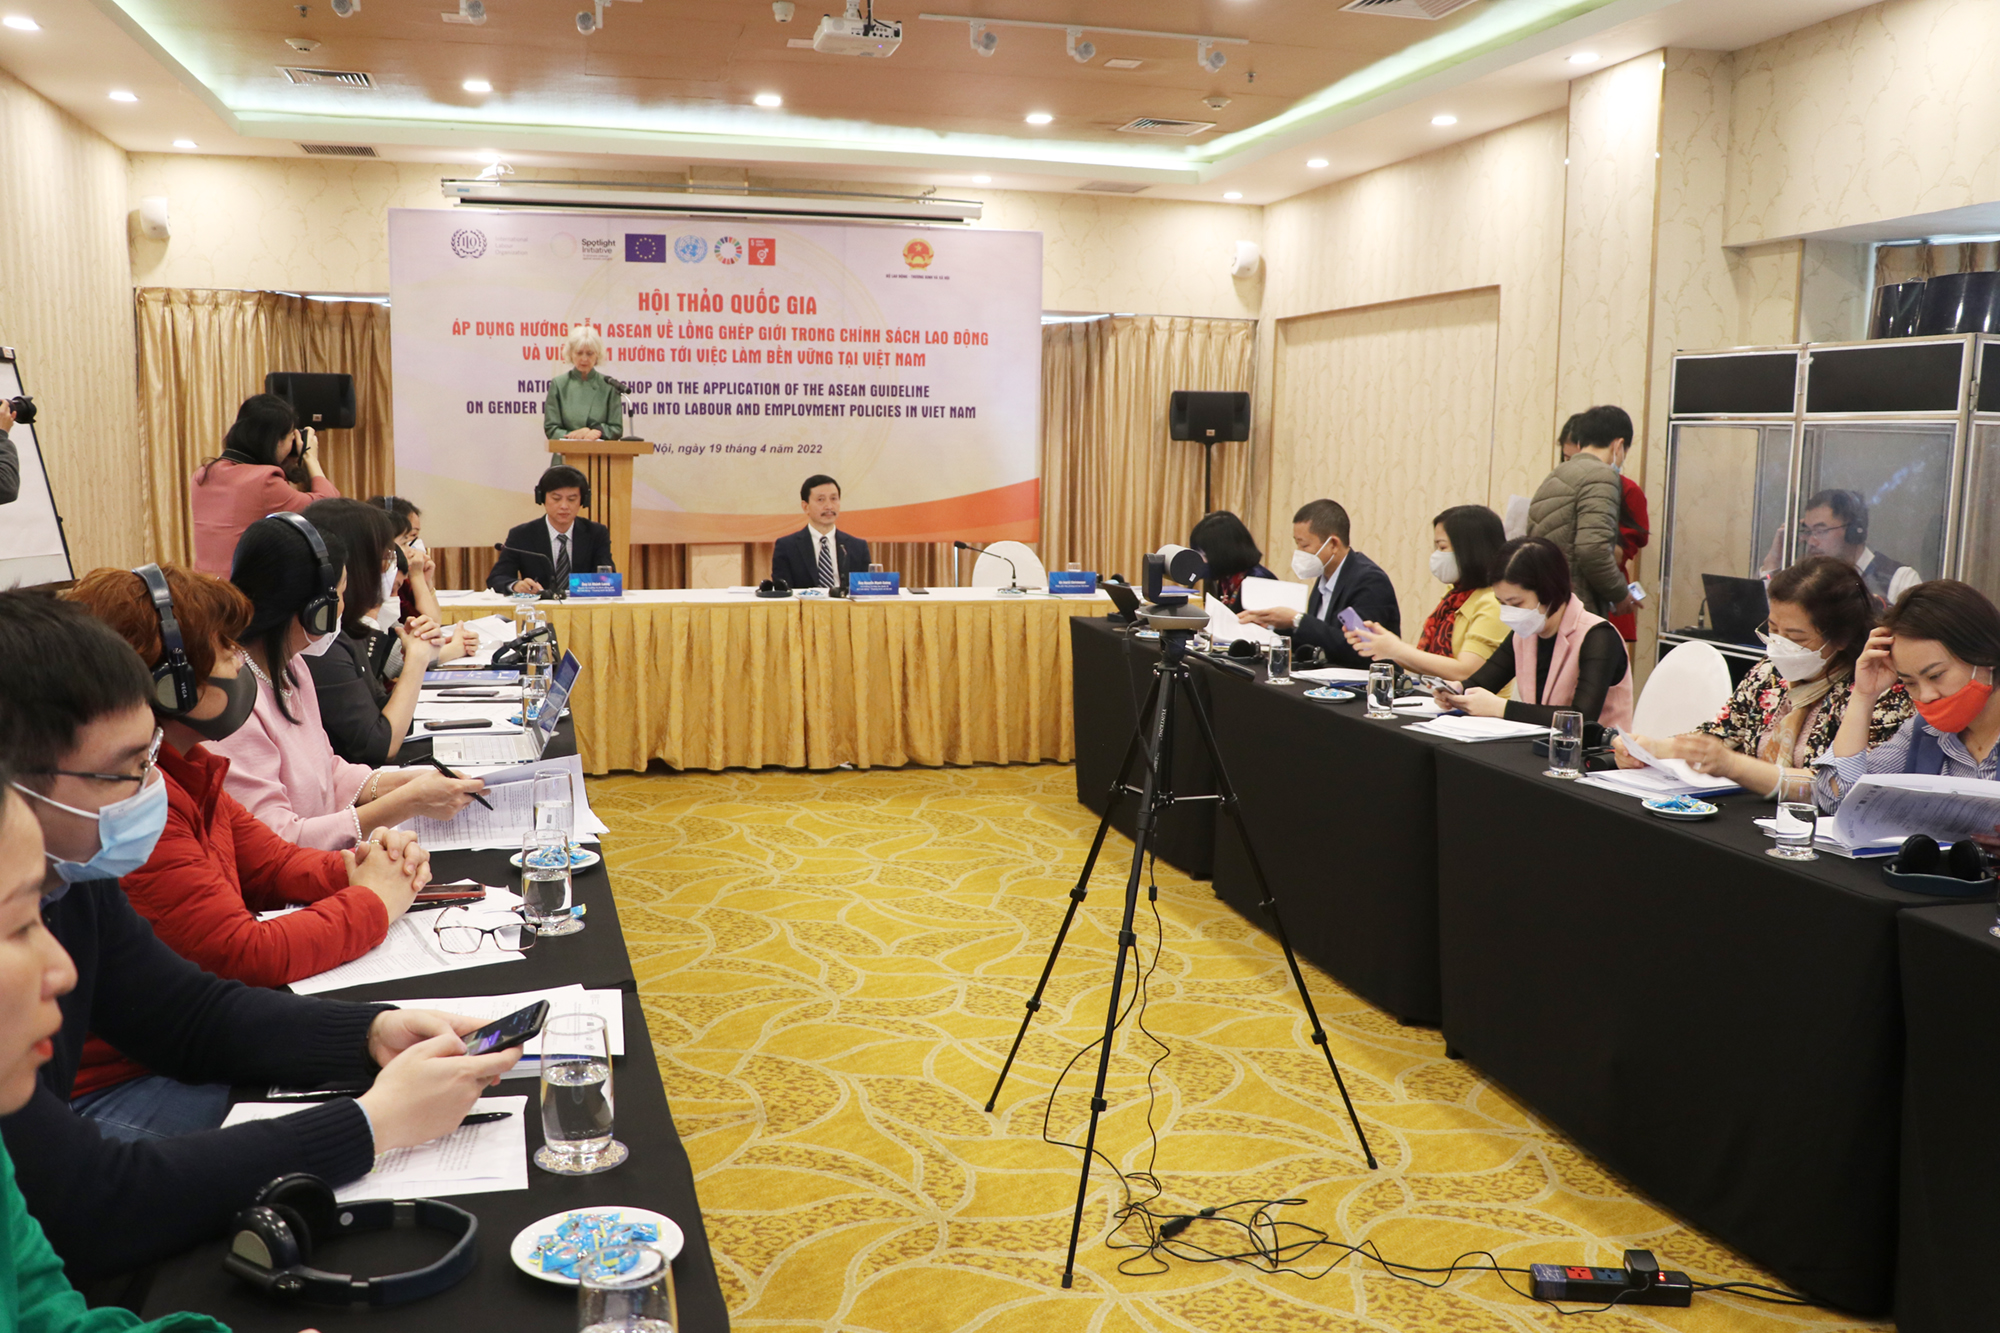 Hội thảo quốc gia về áp dụng Hướng dẫn ASEAN về lồng ghép giới trong các chính sách lao động và việc làm hướng tới việc làm bền vững tại Việt Nam